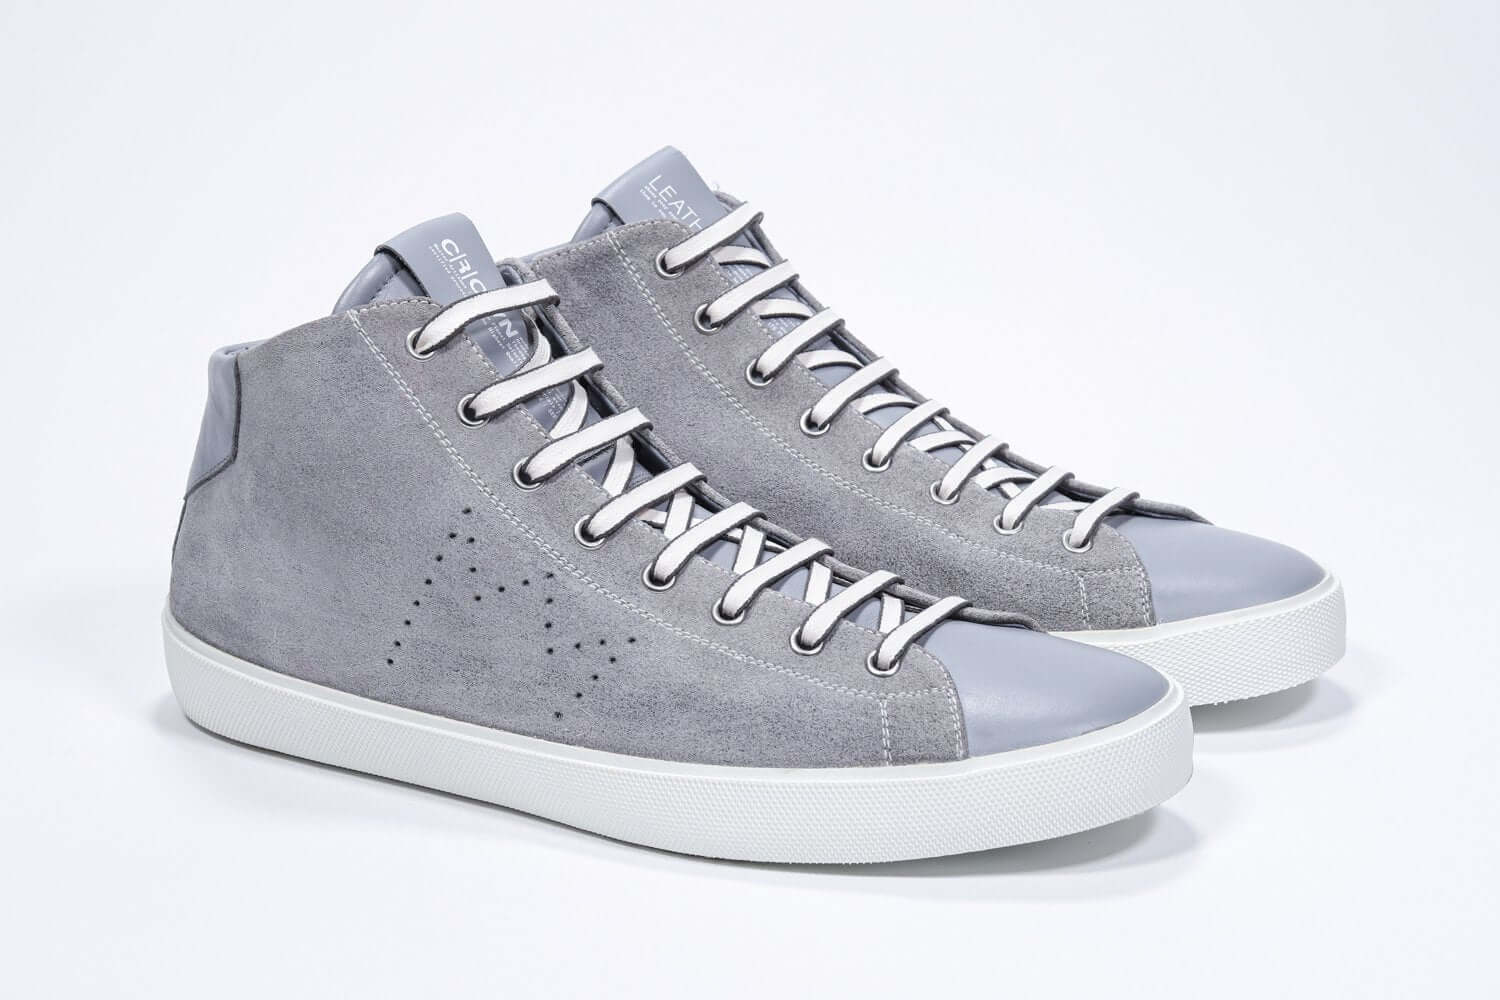 Vue de trois quarts de l'avant de la chaussure gris clair sneaker avec une tige en daim, un logo perforé, une fermeture éclair interne et une semelle blanche.